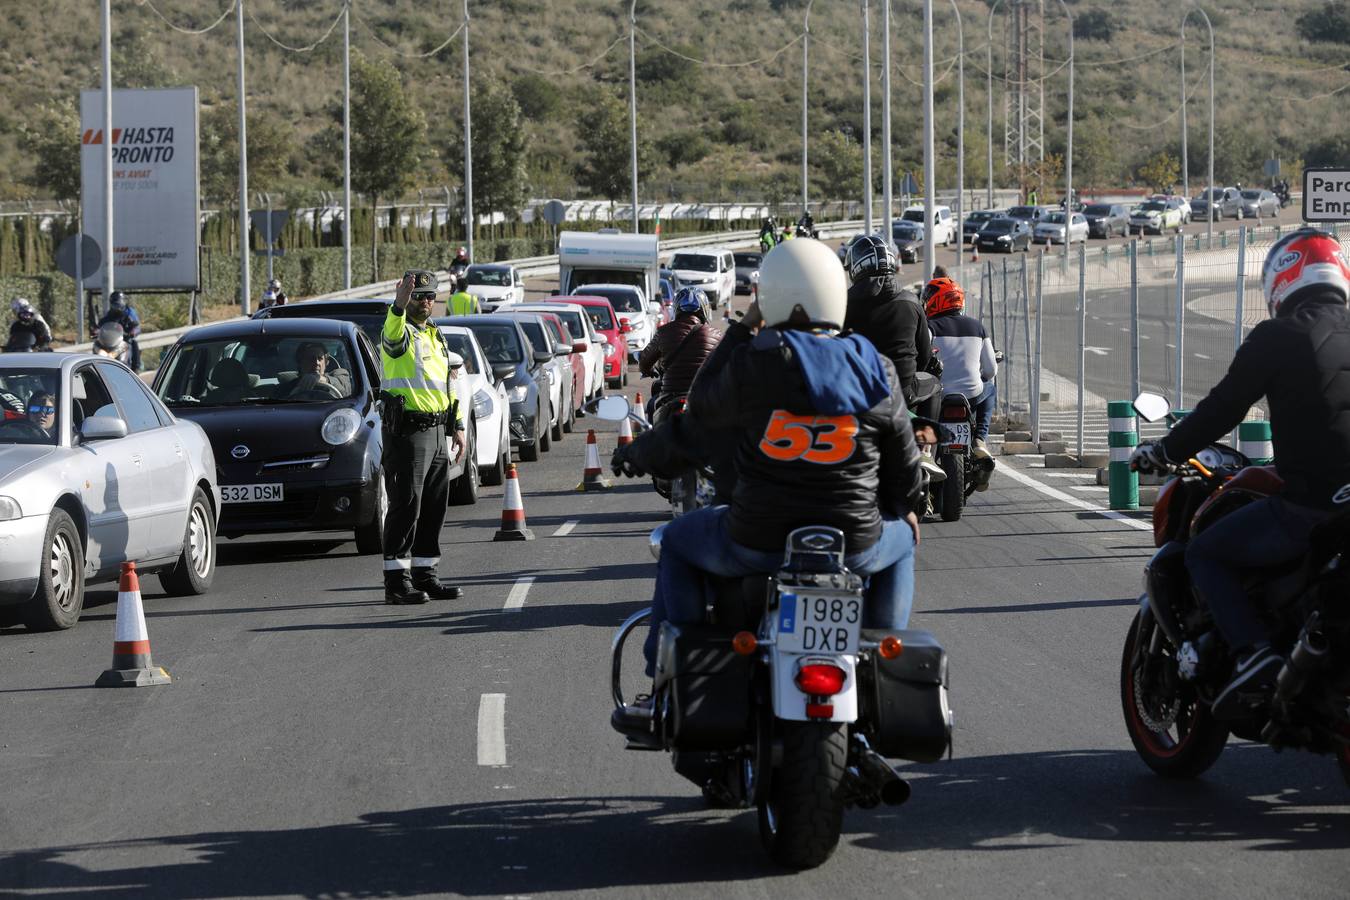 Aficionados del motociclismo disfrutan de la jornada de calificación del sábado 16 de noviembre en el Circuito Ricardo Tormo